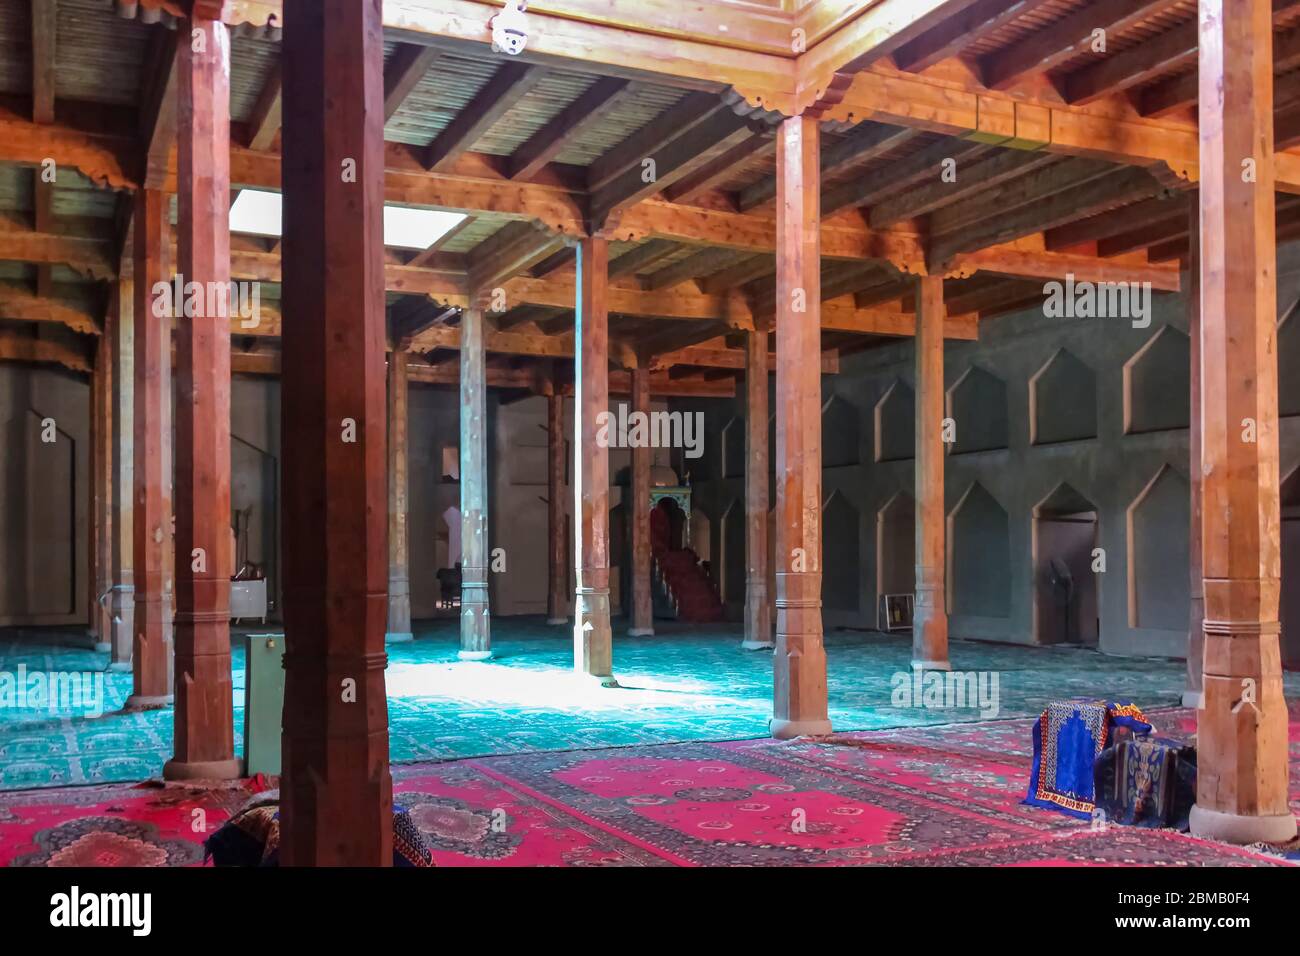 Turpan, Xinjiang, Cina - 10 luglio 2014: Le sale di preghiera interne della moschea adiacente al Minareto di Emin sostenuto da colonne di legno Foto Stock